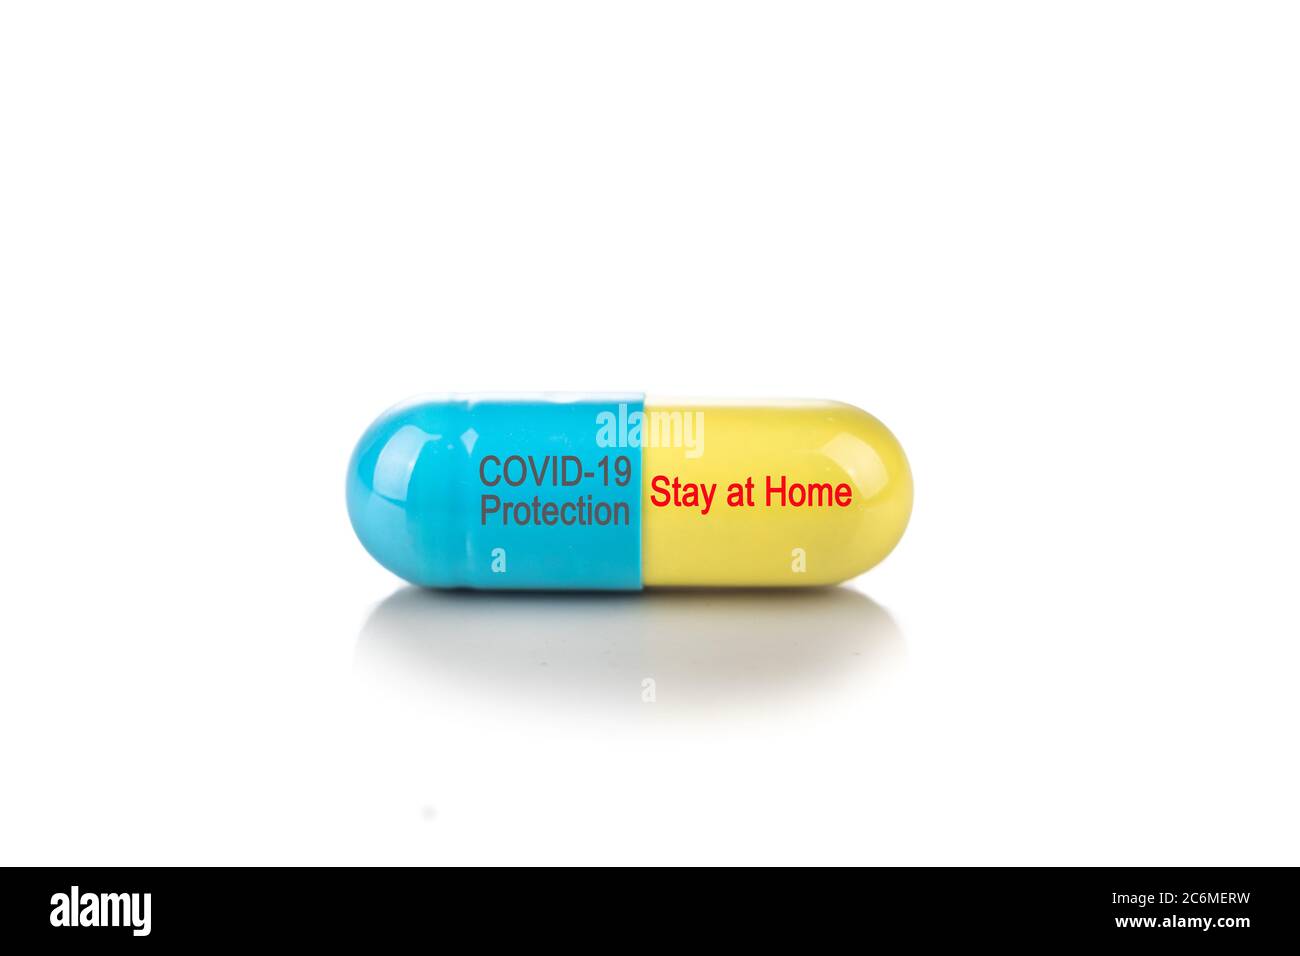 Capsula di protezione Conceptual Covid-19 con messaggio di avviso Stay at Home su sfondo bianco Foto Stock